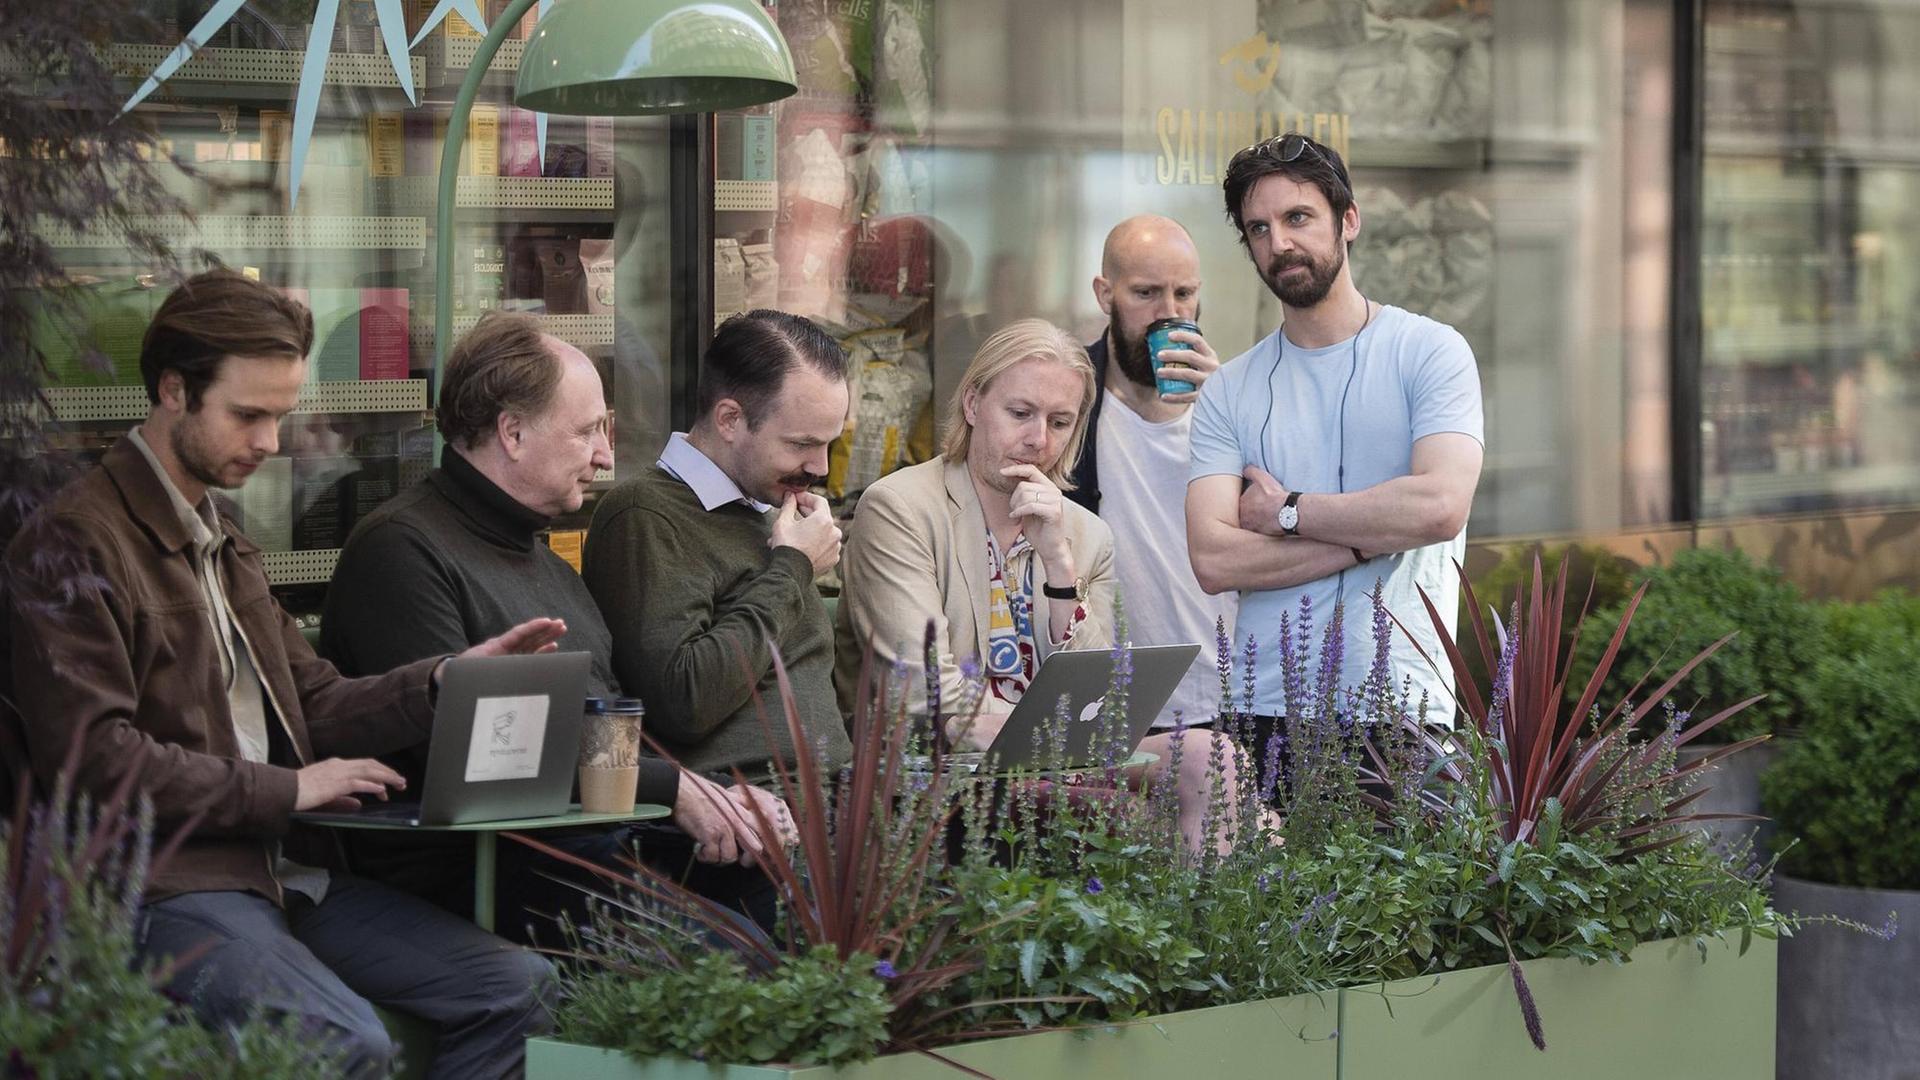 Menschen haben sich auf der Straße zu einer Gruppe zusammengefunden und schauen auf ein Laptop.